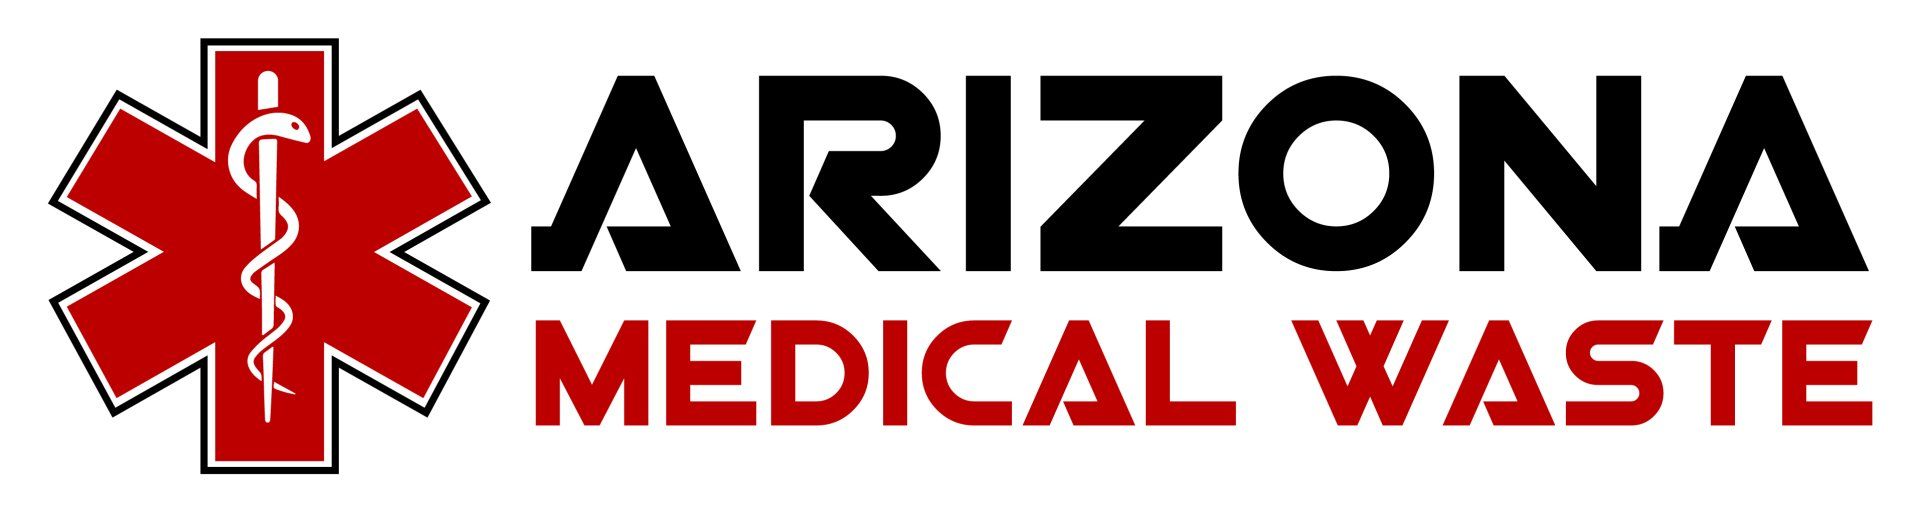 Arizona Medical Waste logo